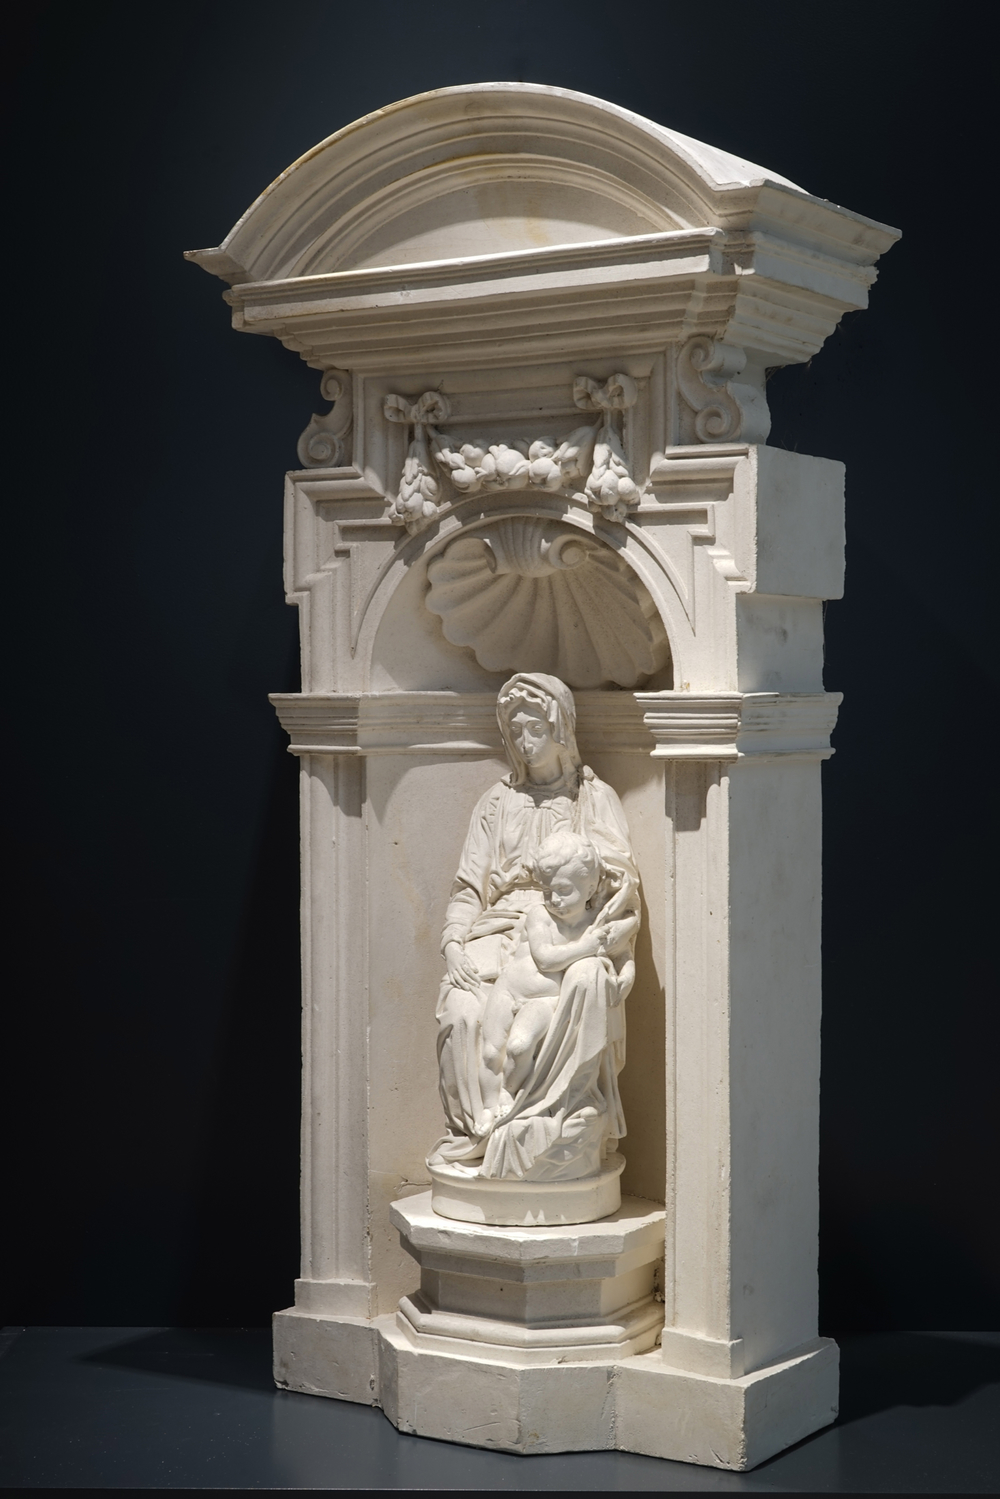 A plaster cast of the Michelangelo Madonna, workshop De Wispelaere, Bruges, 1st half 20th C.